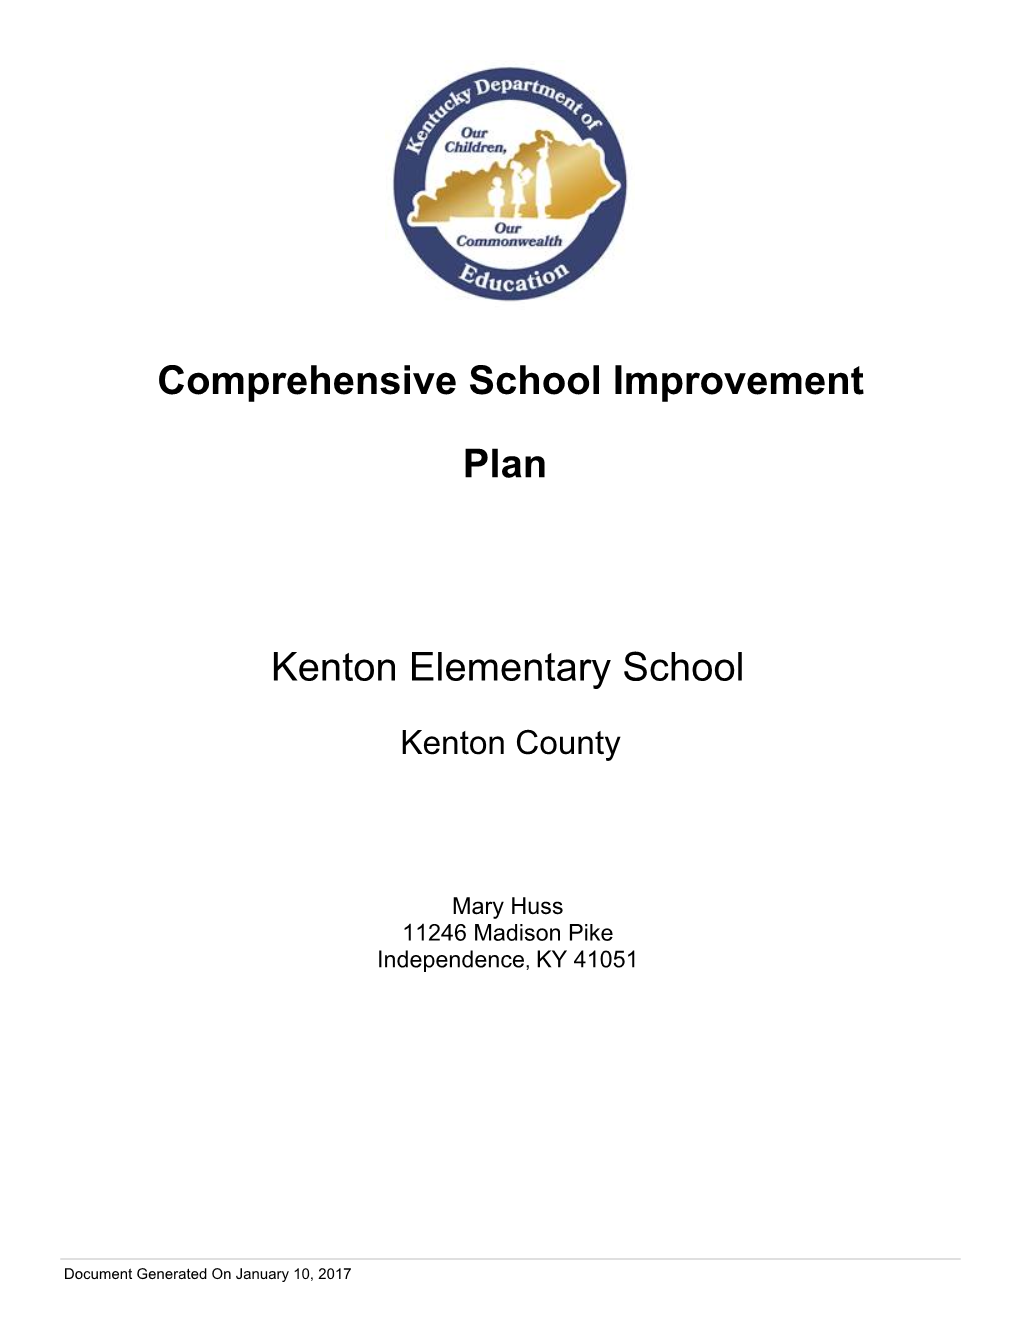 Comprehensive School Improvement Plan Kenton Elementary School